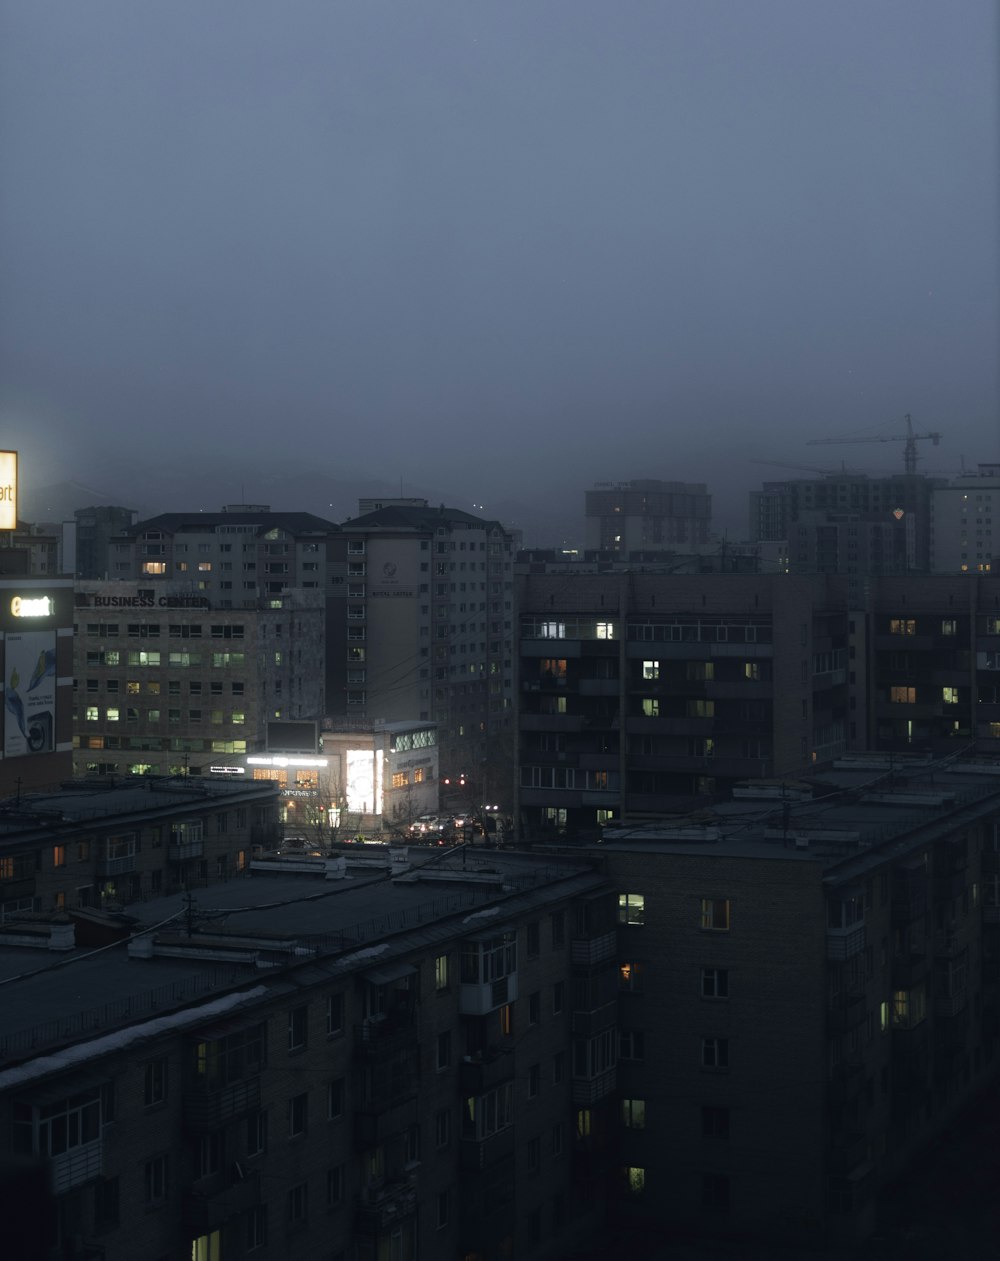 Stadtgebäude unter grauem Himmel während der Nacht